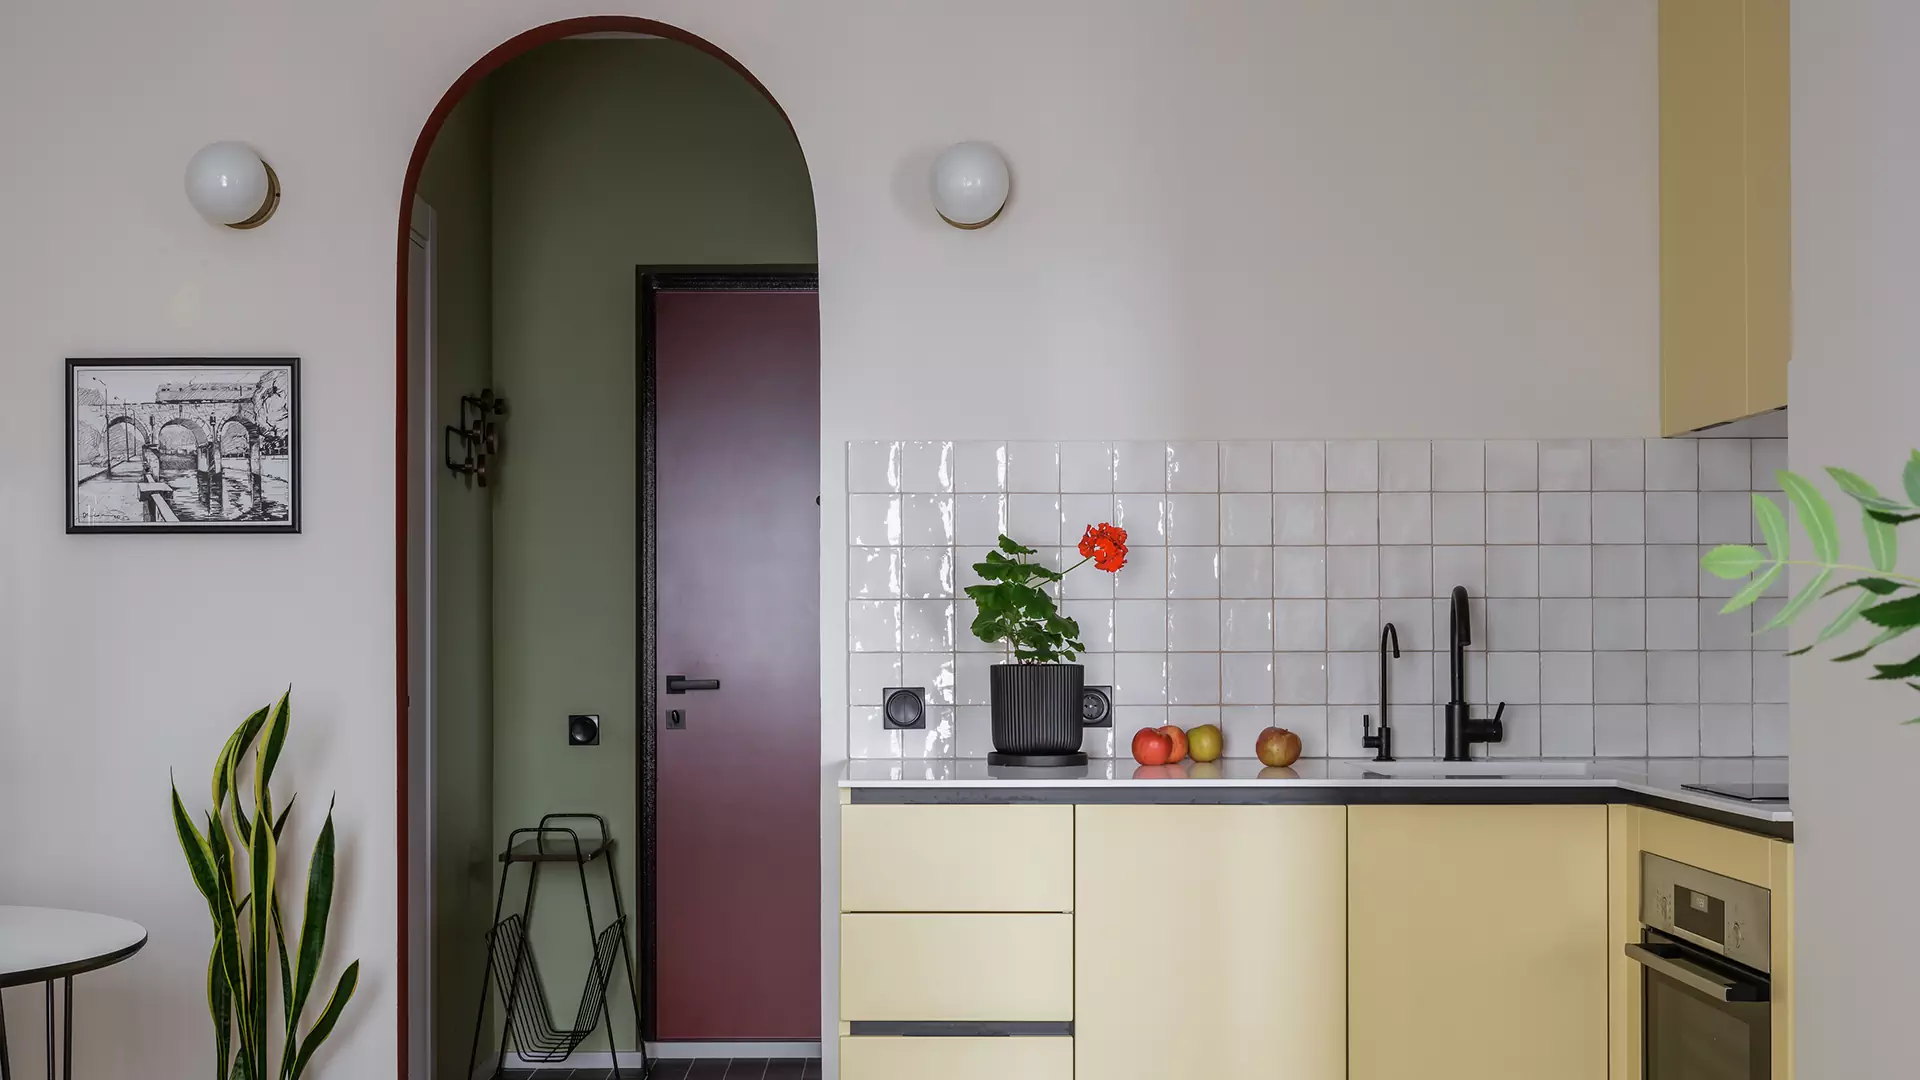 Красочный интерьер квартиры для сдачи в аренду в оживленном подмосковном районе — проект Екатерины Плаховой